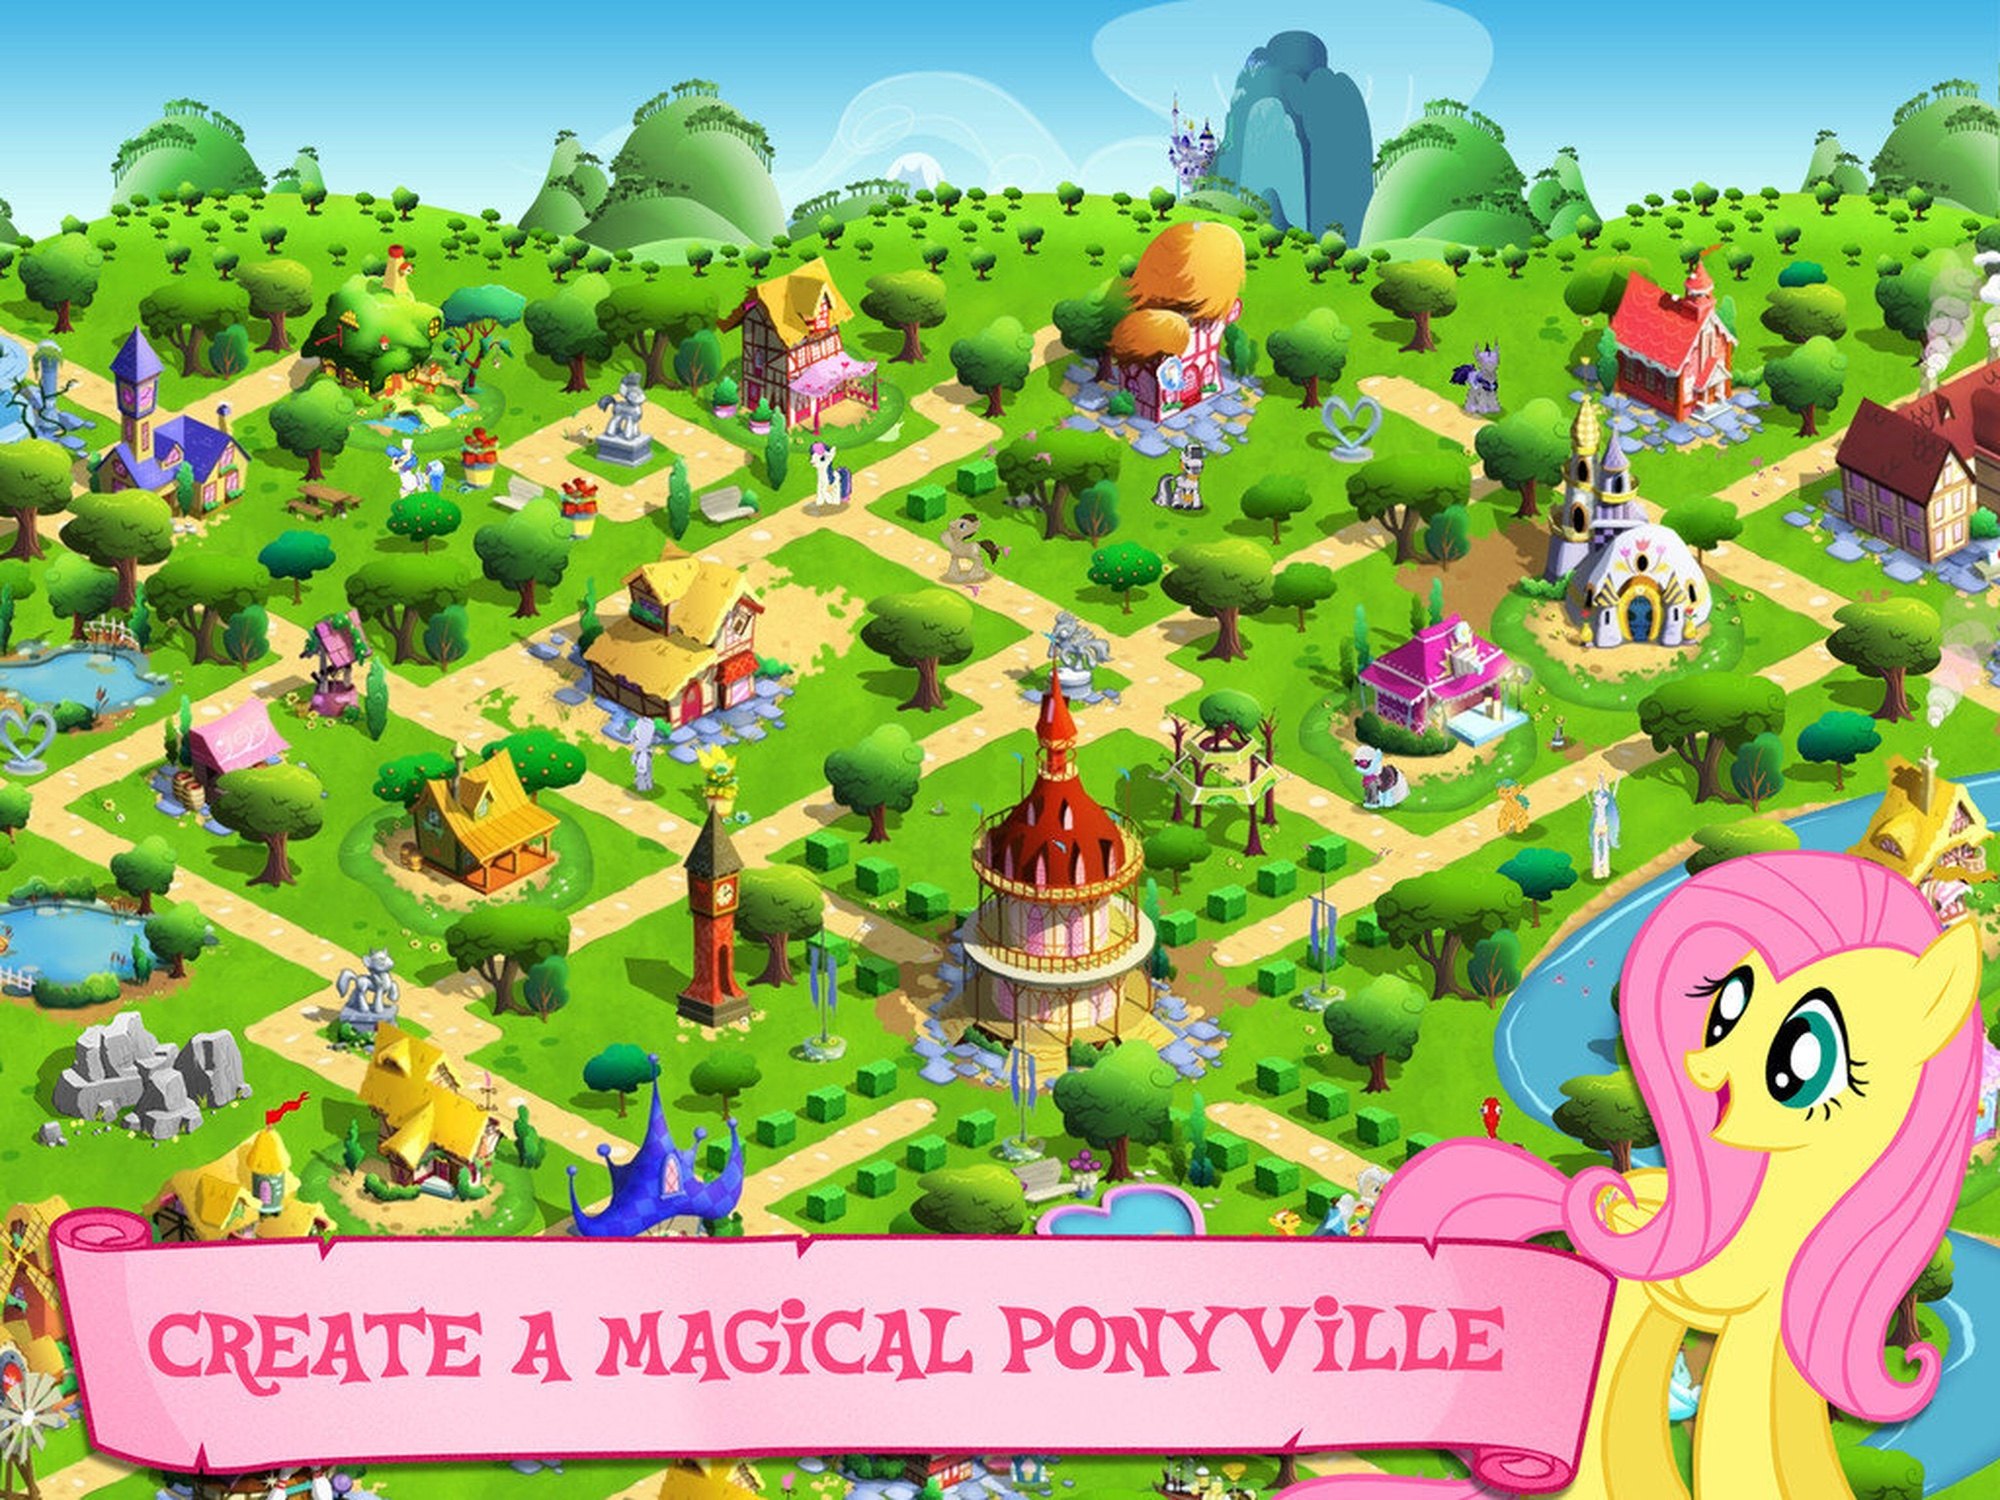 Игры расставлять мир. My little Pony магия принцесс Понивилль. Игра my little Pony понивиль карта. Игра my little Pony Gameloft. My little Pony Gameloft Ponyville.